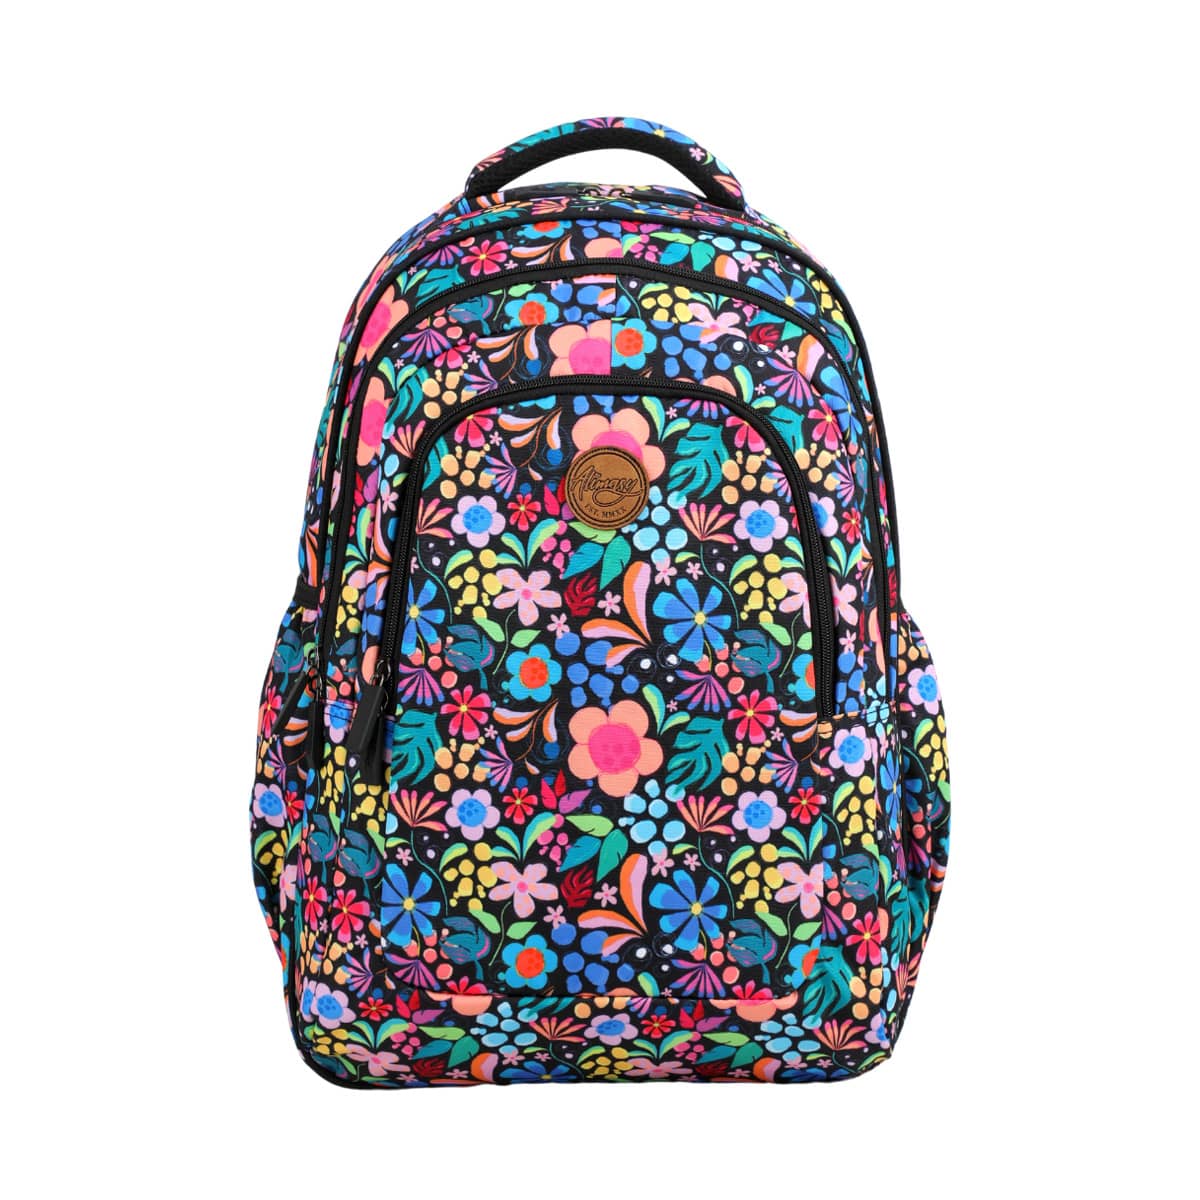 Alimasy Large Backpack - Kasey Rainbow - Wonderland